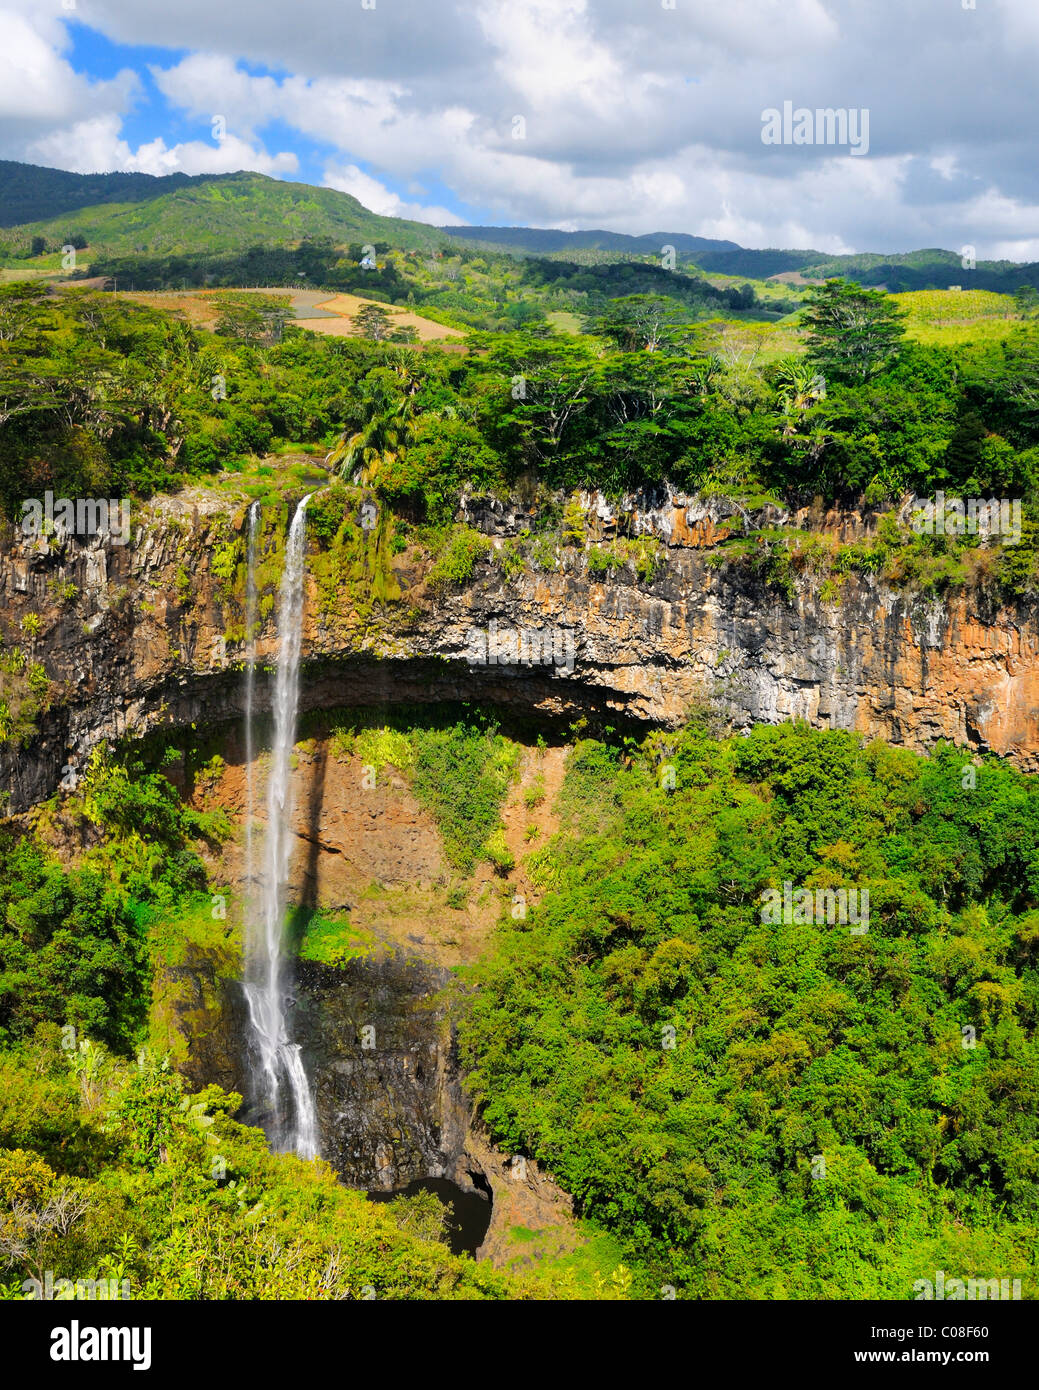 La cascade de Chamarel Cascade près du village de Chamarel, Rivière Noire, Ile Maurice. Banque D'Images